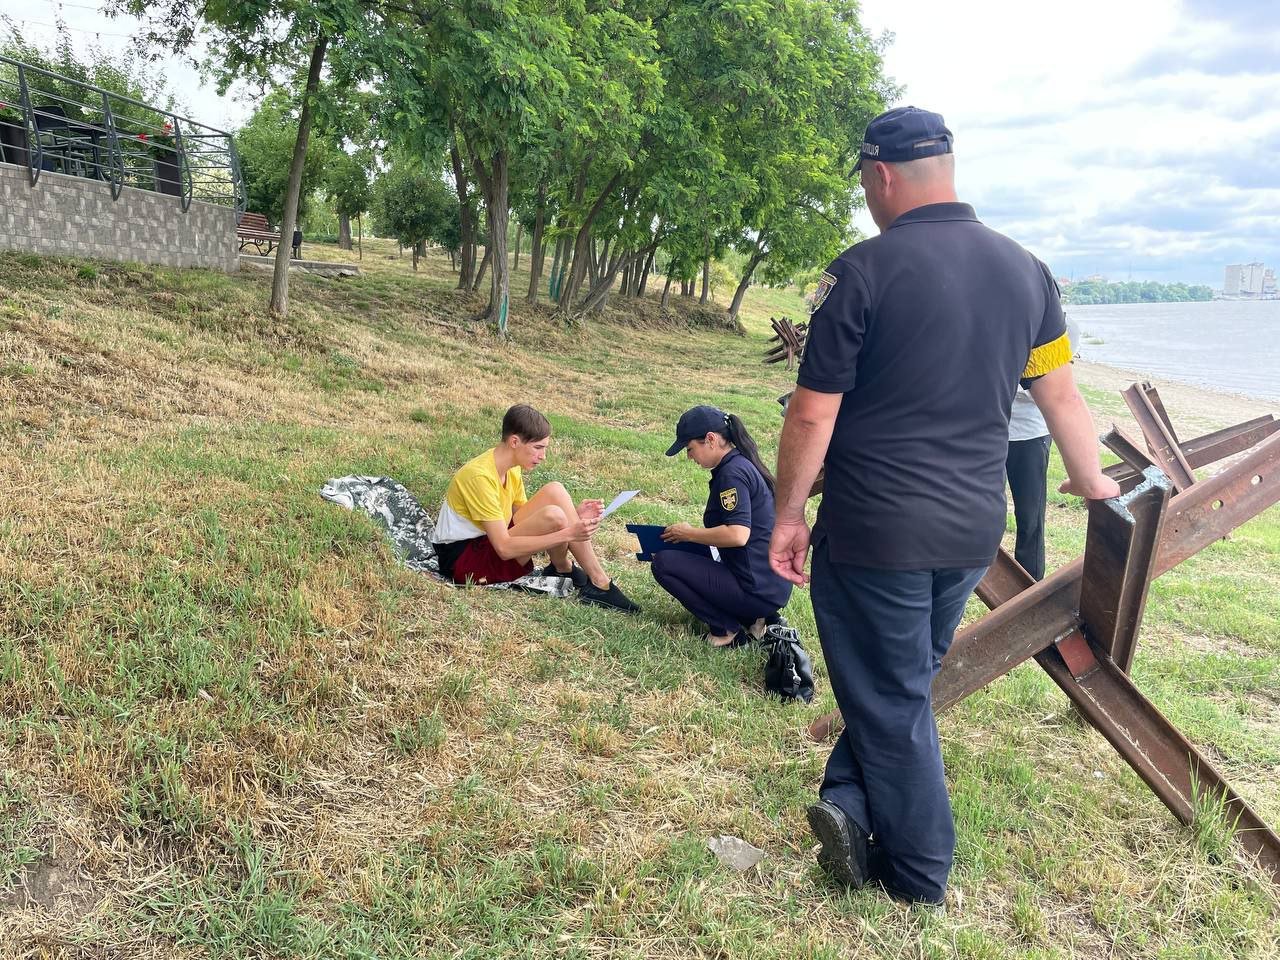 "Купание запрещено": в Измаиле спасатели провели рейд на берегу Дуная